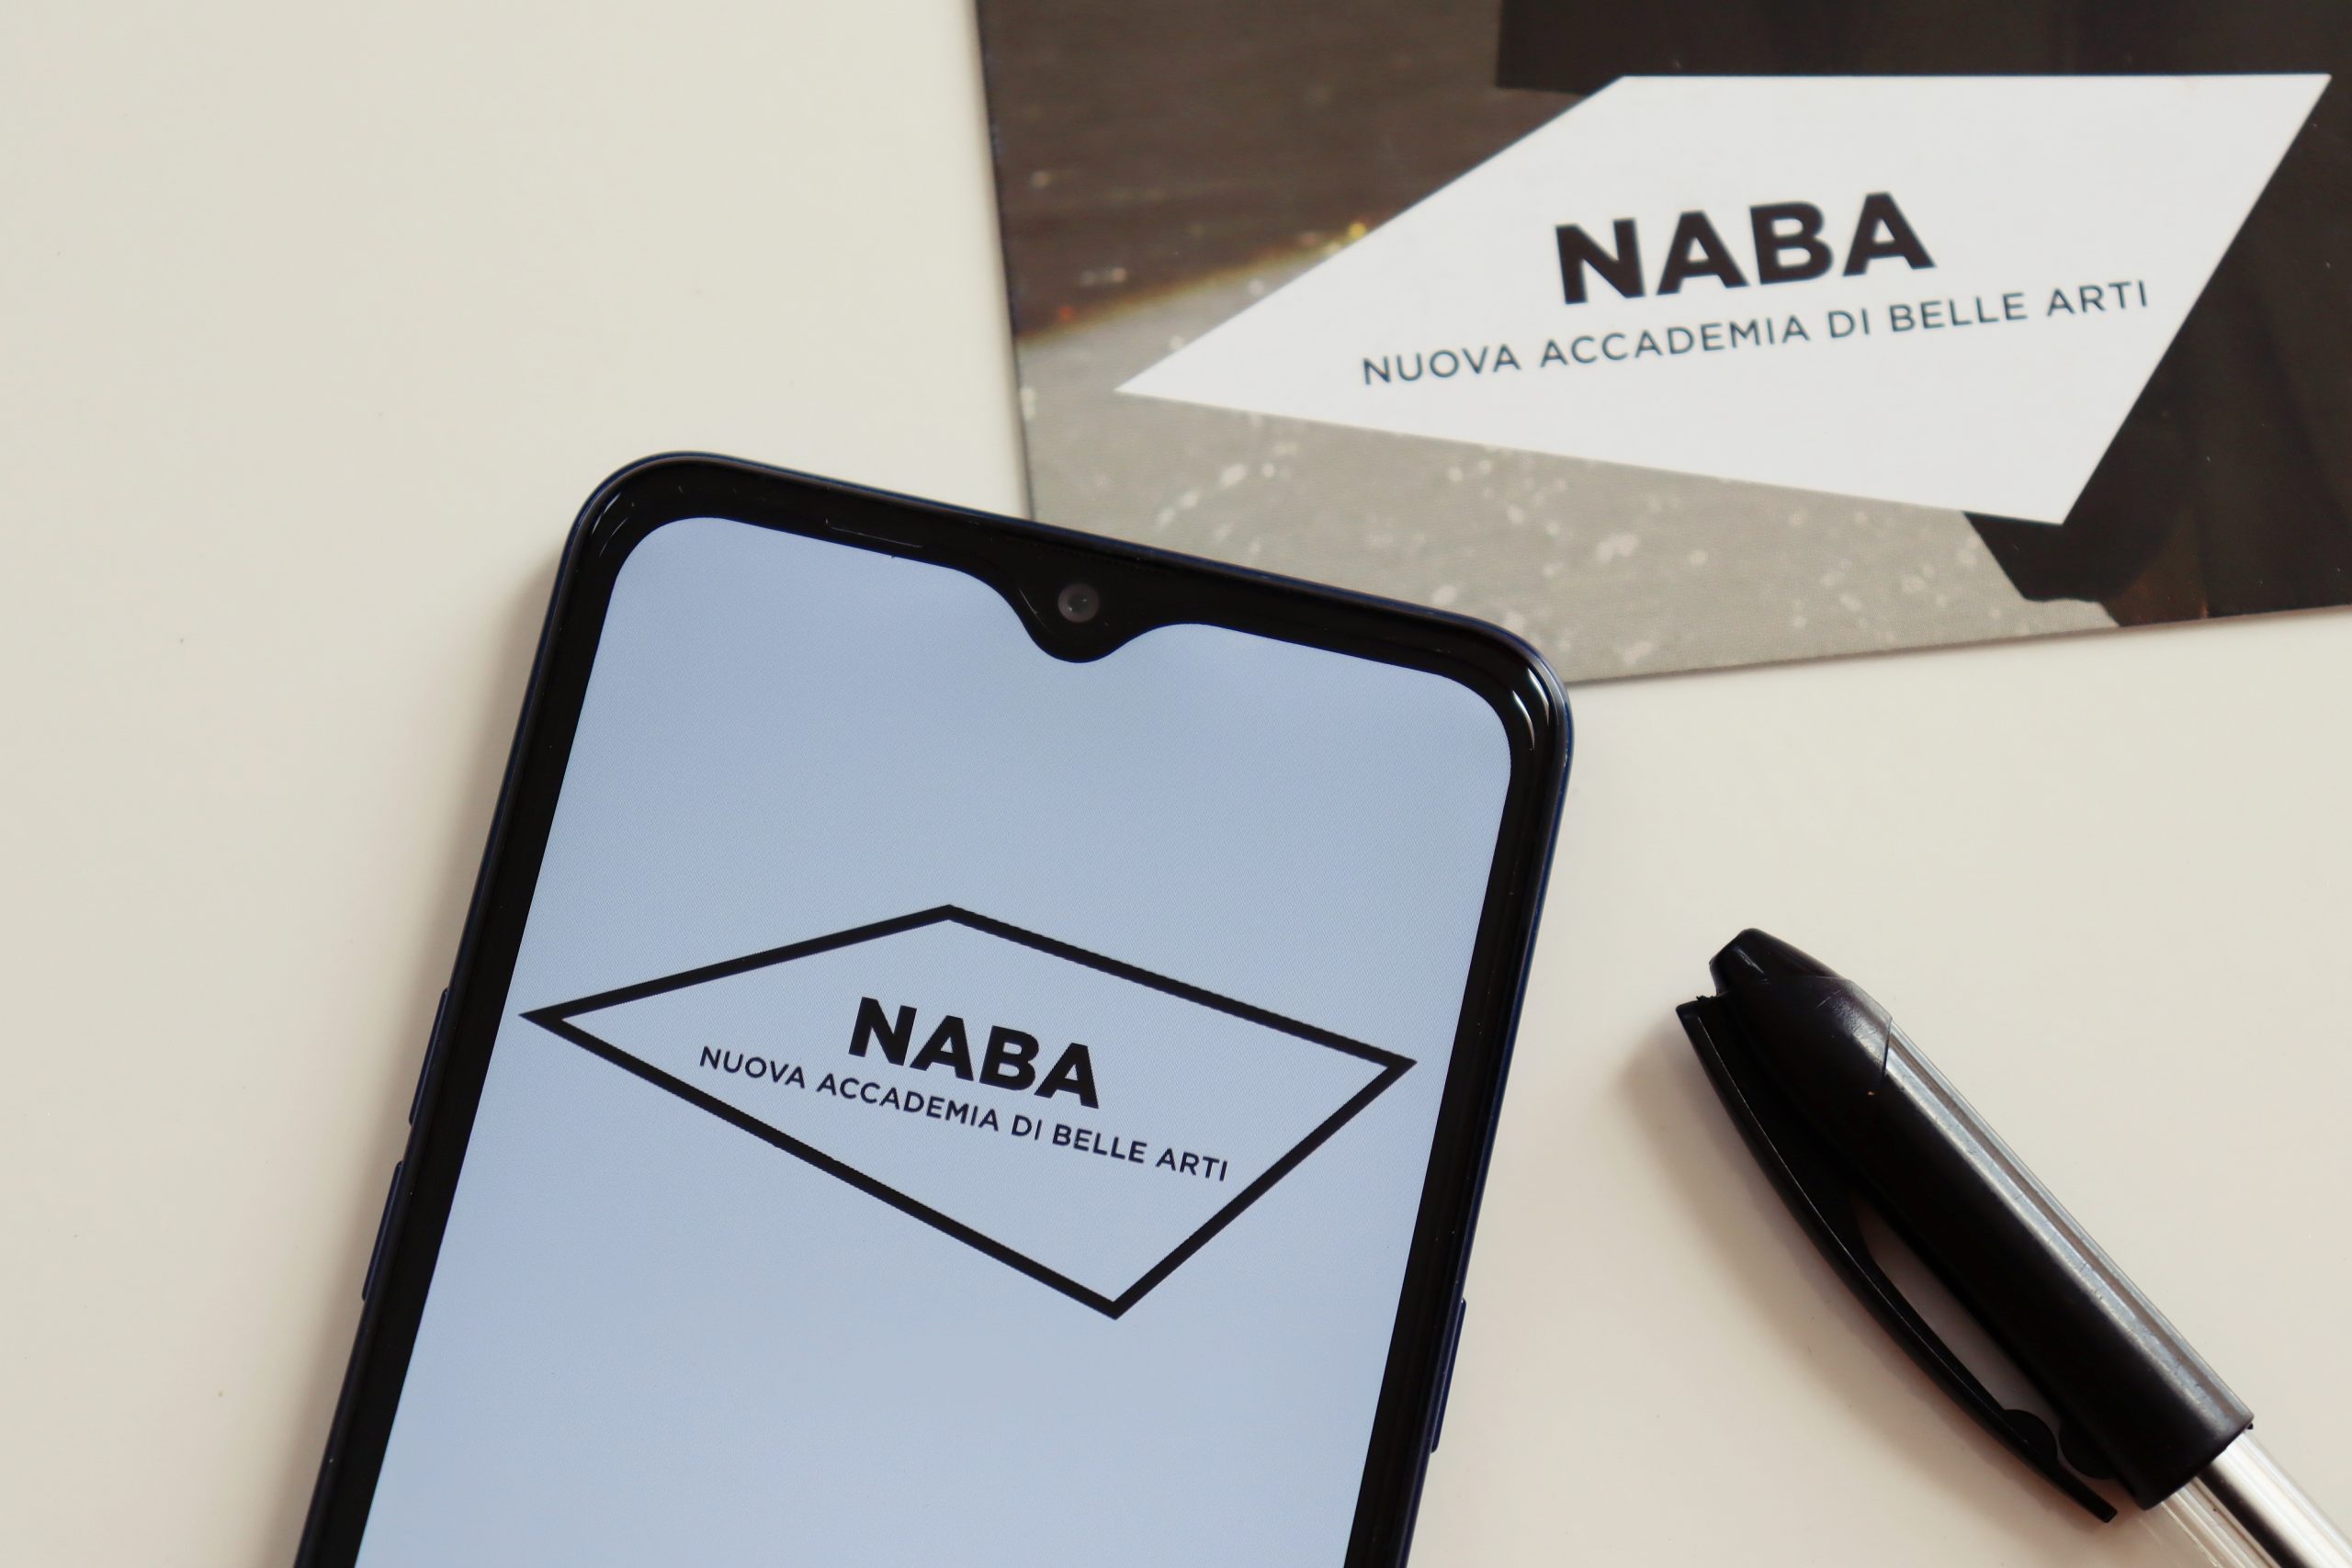 NABA si è sempre caratterizzato per i suoi collegamenti tra tradizione ed innovazione, basando il suo pensiero sull’arte e sul design come strumenti per interpretare e trasformare il mondo.